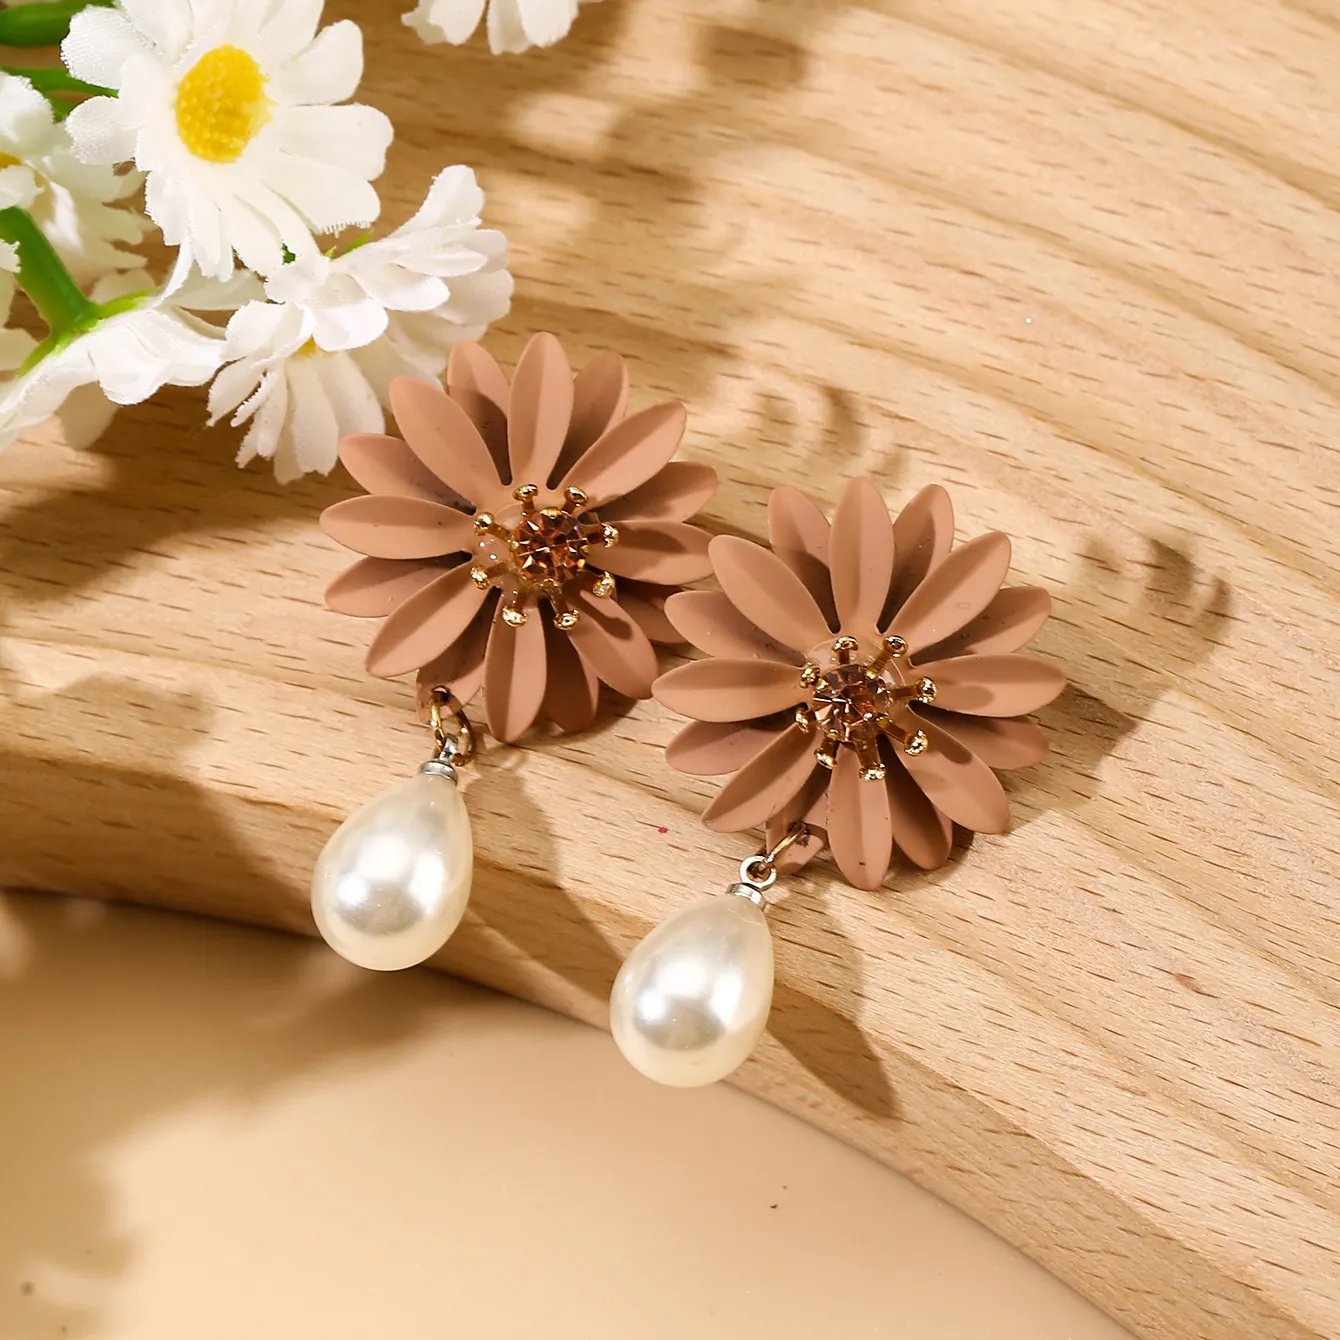 Queming anting-anting serbaguna, Fashion dicat anting-anting bunga bentuk Drop mutiara imitasi sederhana lucu